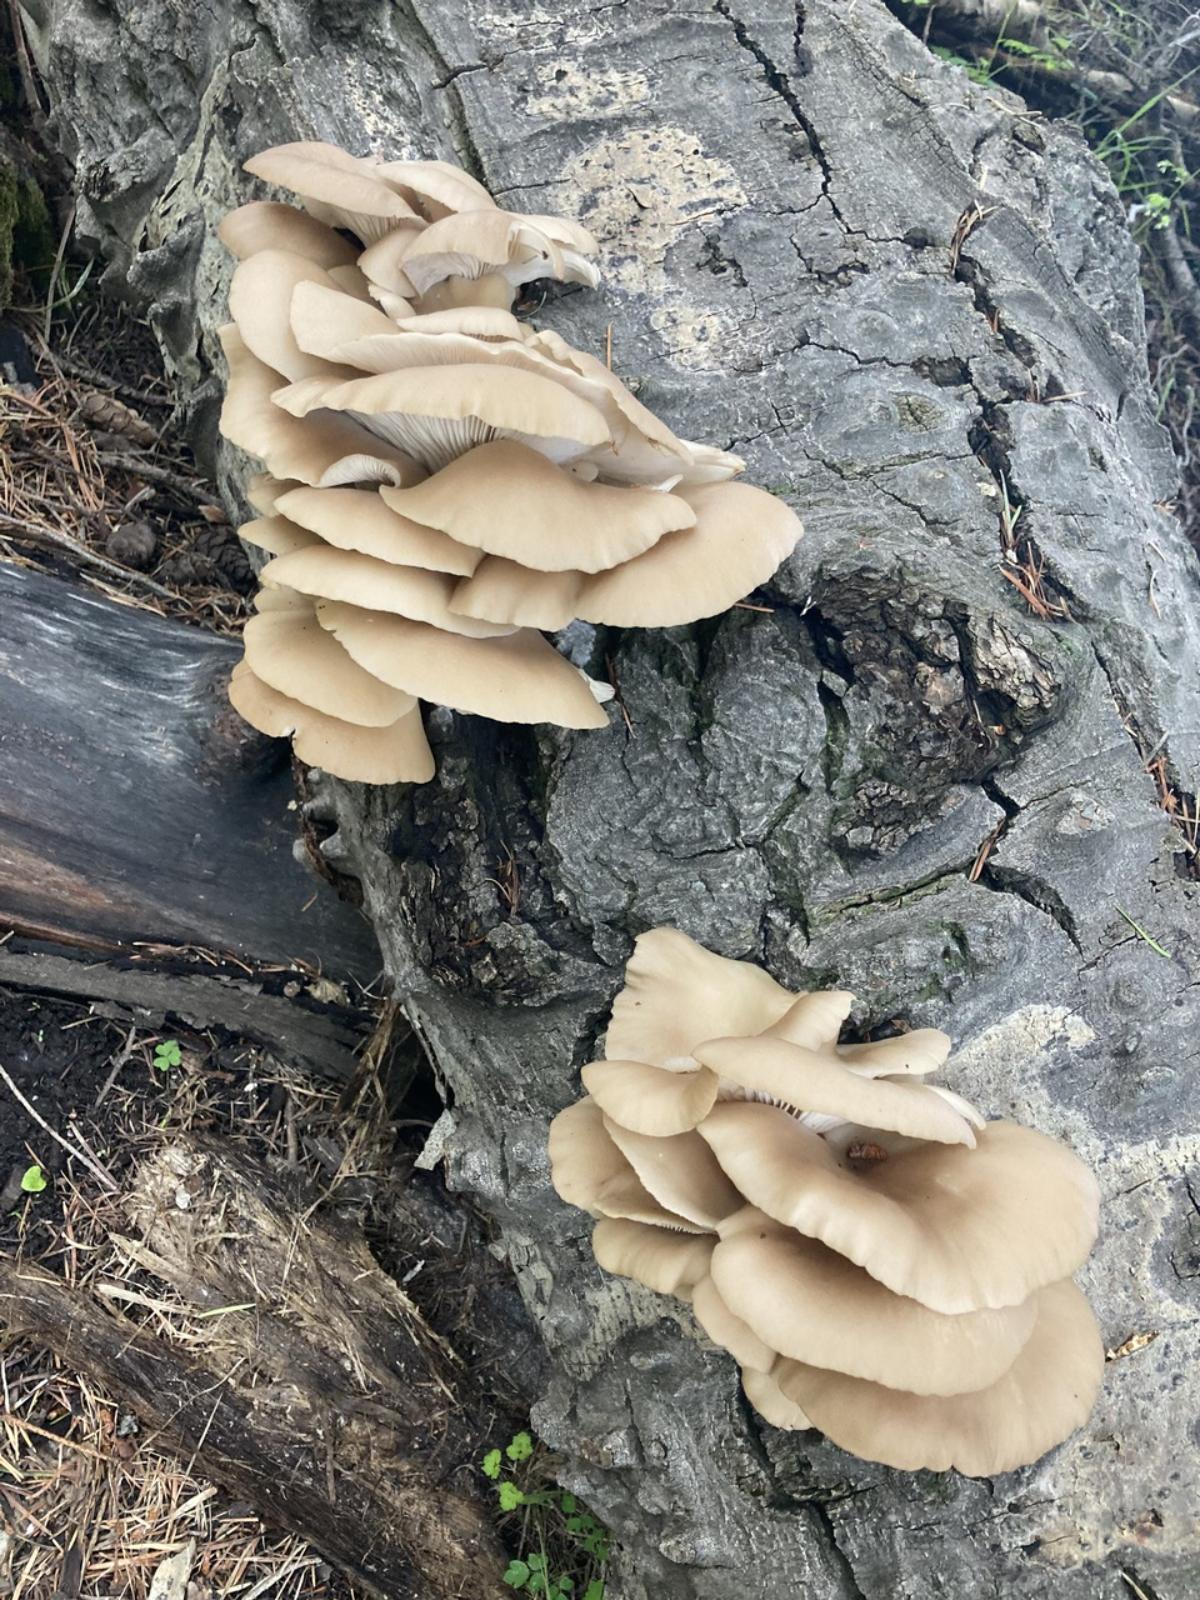 aspen oyster mushroom
